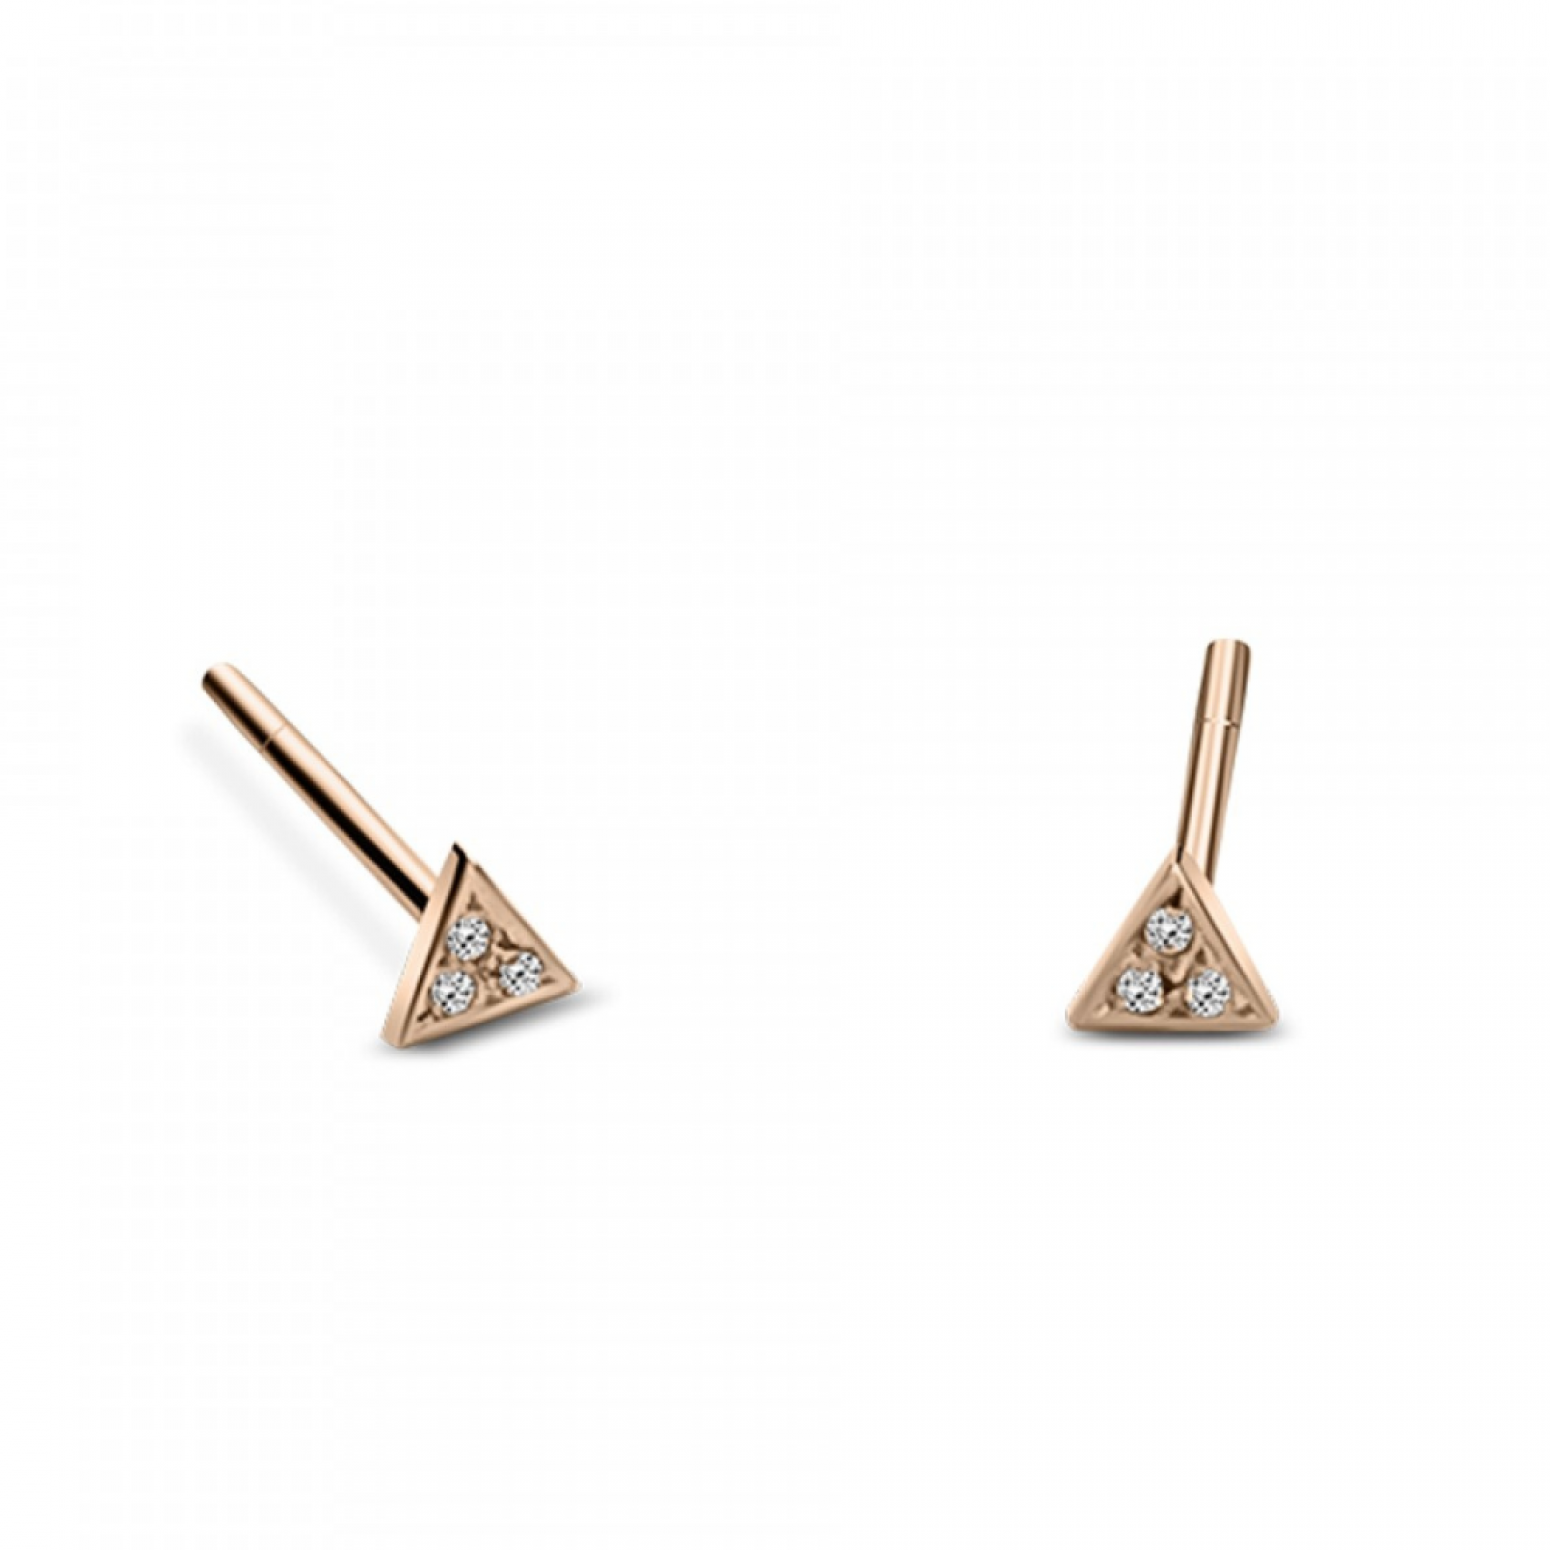 Triangle earrings K9 pink gold with zircon, sk3488 EARRINGS Κοσμηματα - chrilia.gr